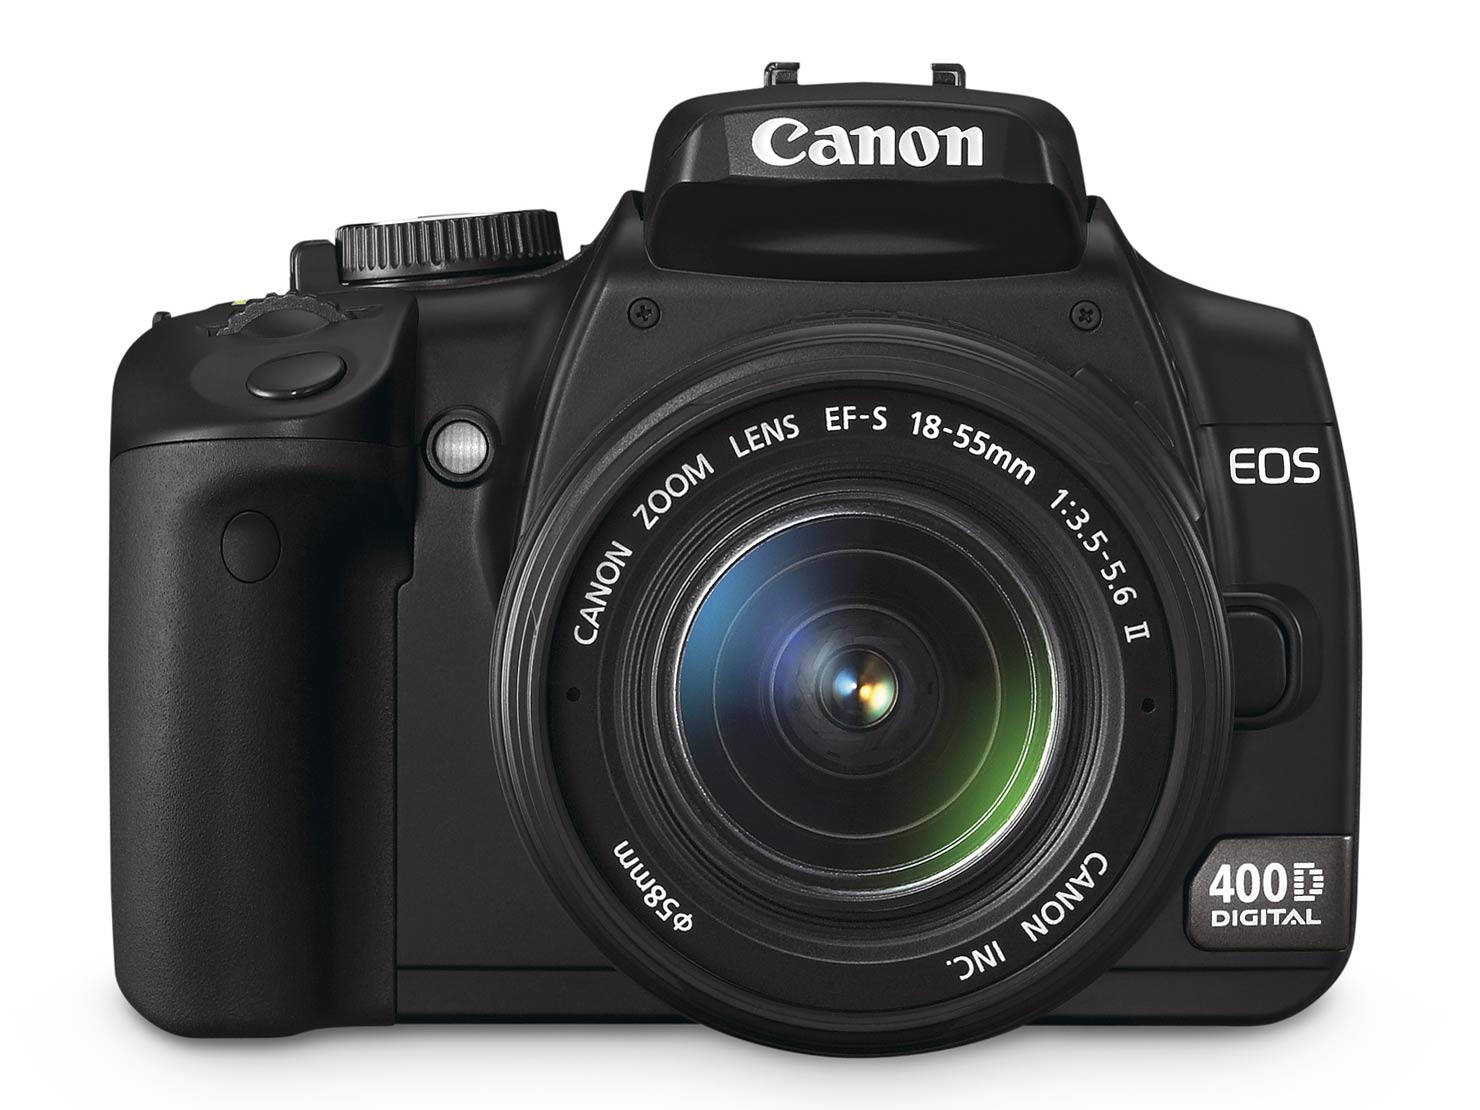 Canon EOS 400D Actual Size Image